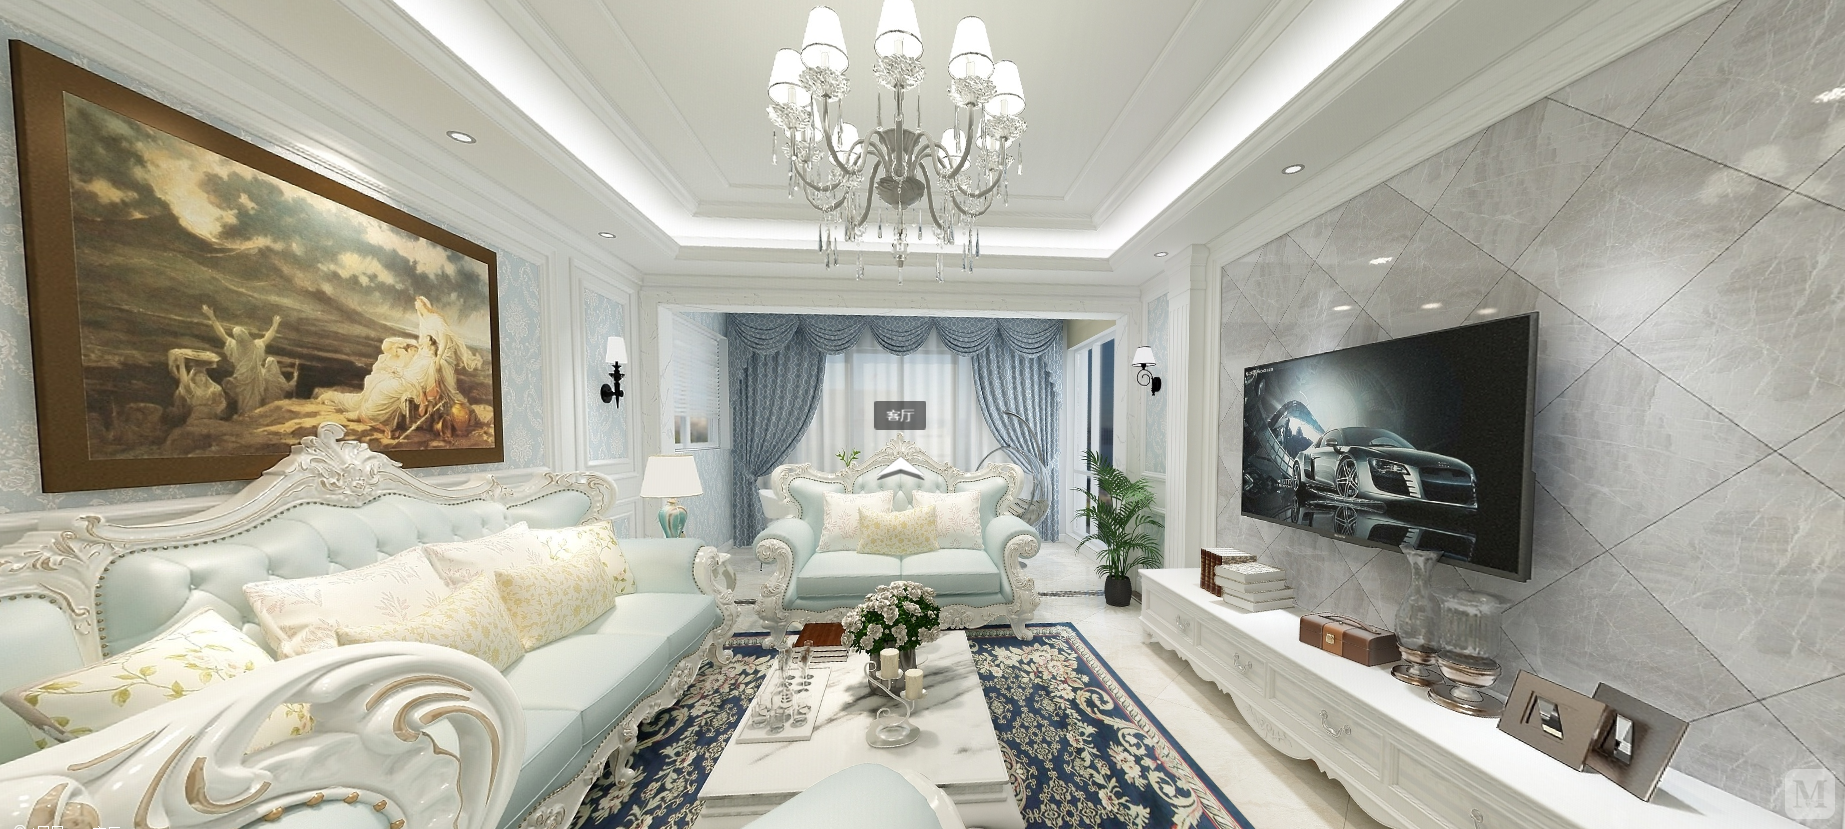 简约浅色调和灰色的这种搭配，客厅以白色为基底，蓝色点缀，整面流线，奠定了房子的主题，淡蓝色的沙发带来特有的欧式古典浪漫，角落里的绿植，给雅静的空间带来生机，整个氛围带着律动的节奏感。